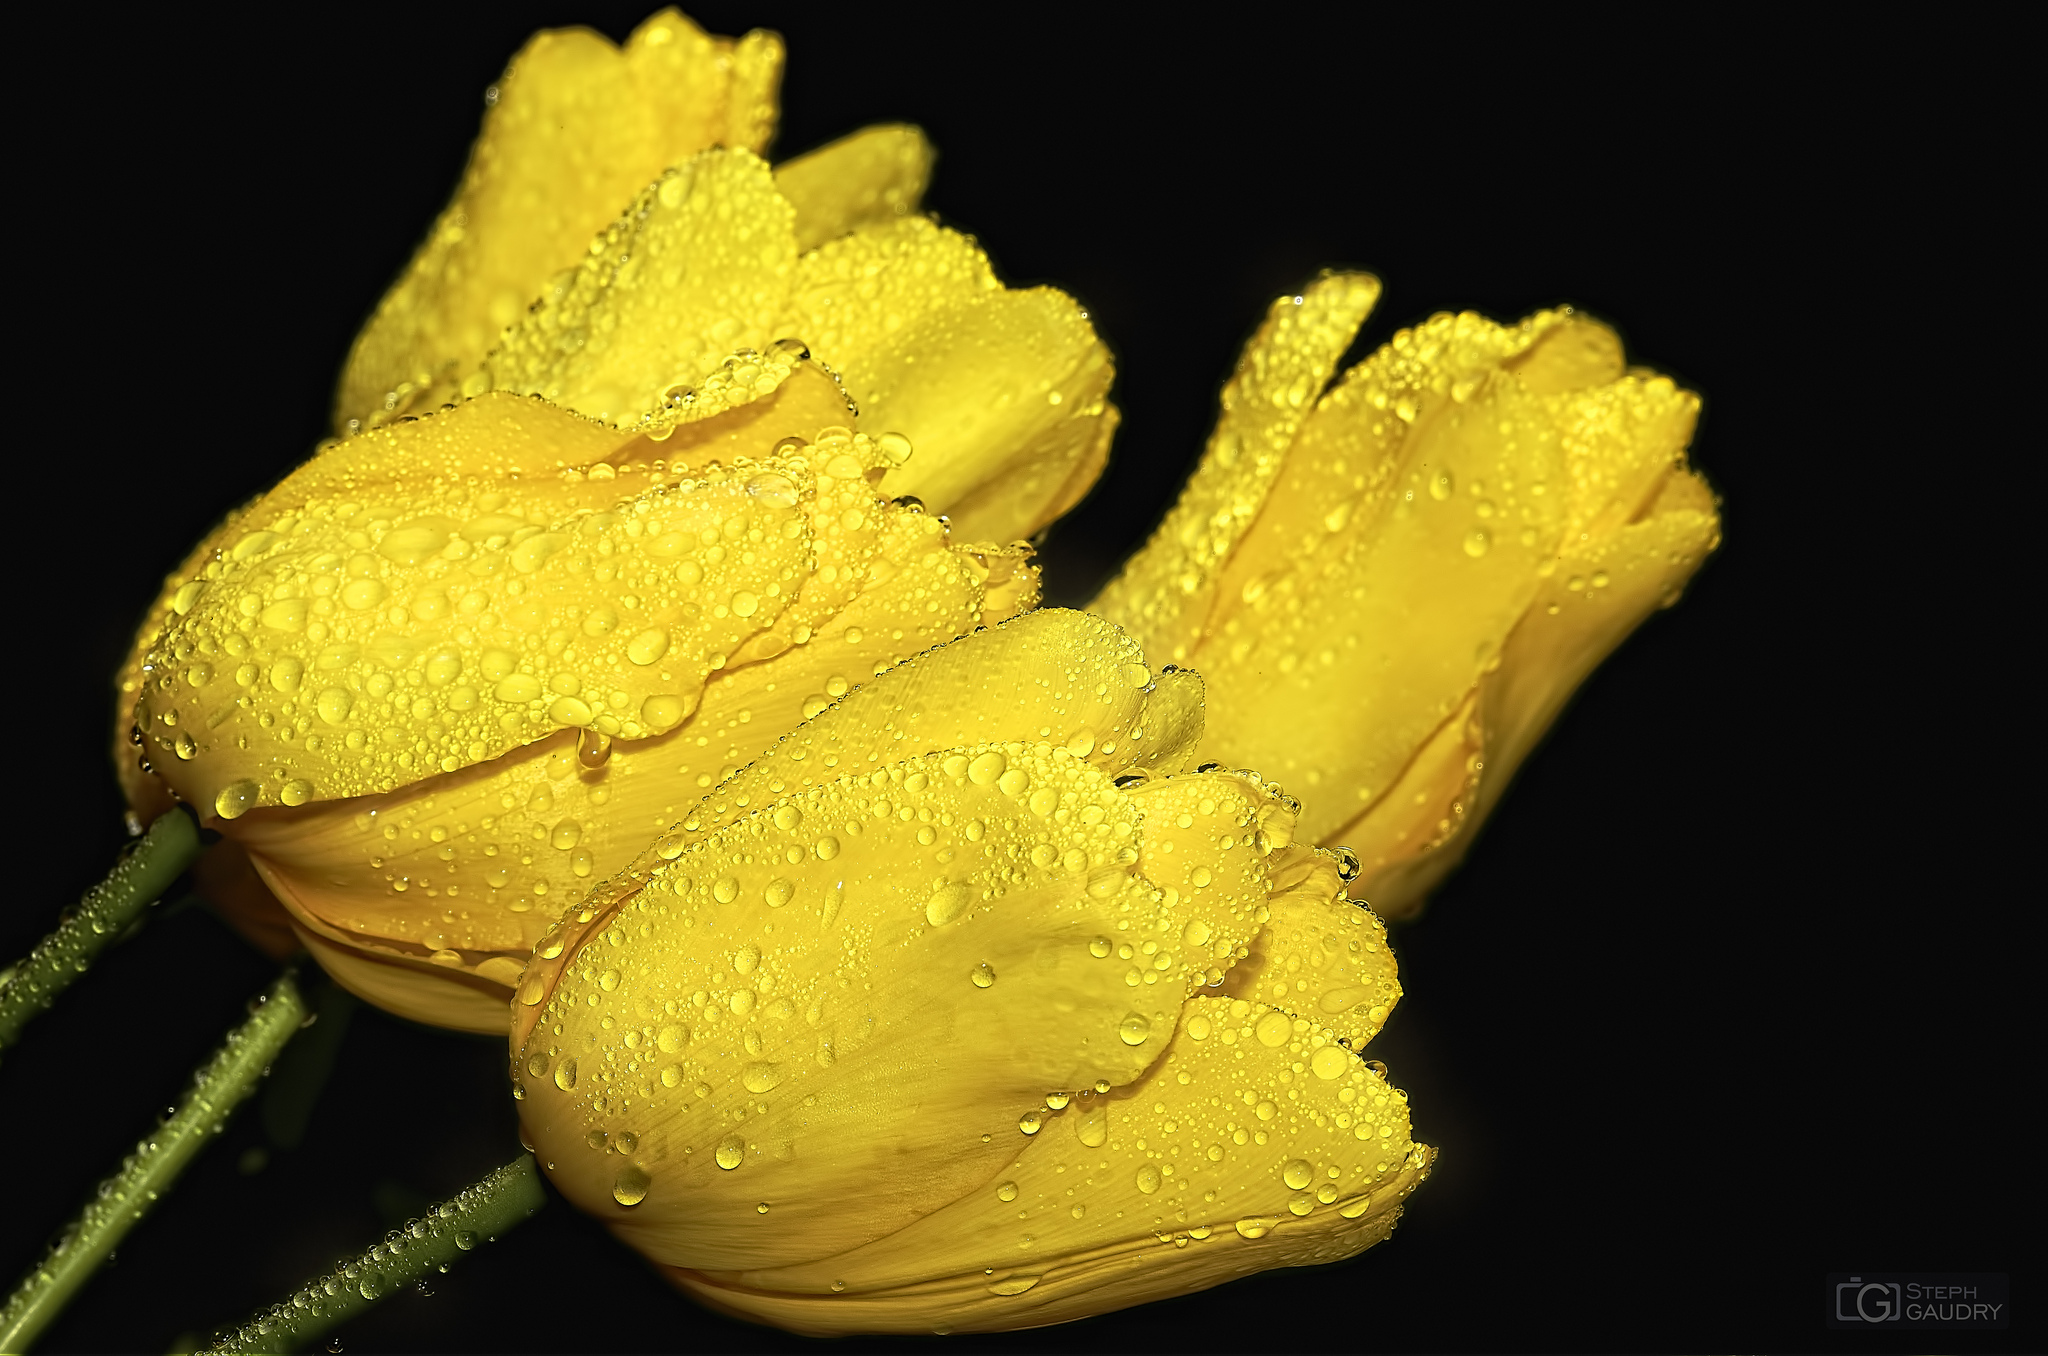 Les petites choses / Gele tulpen